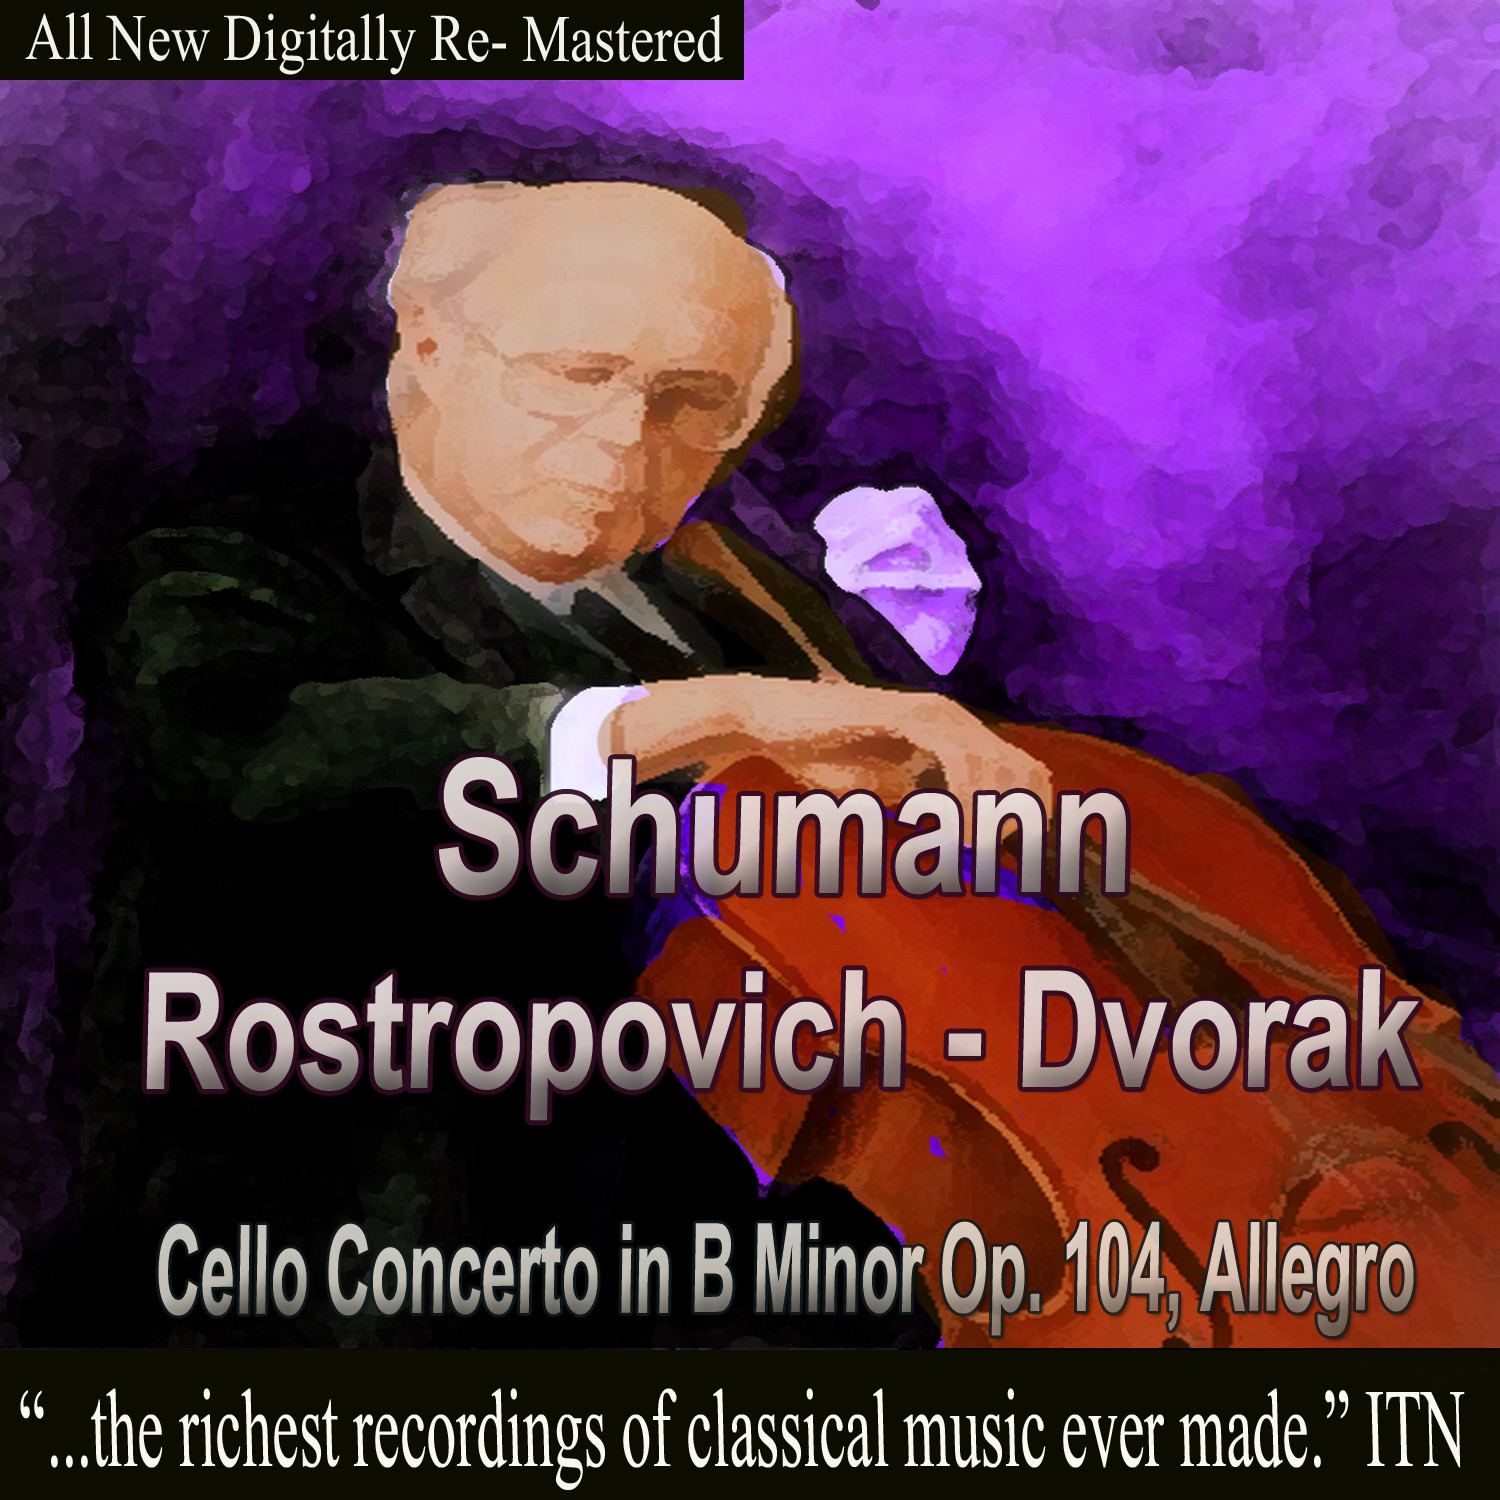 Schumann, Dvorak - Rostropovich